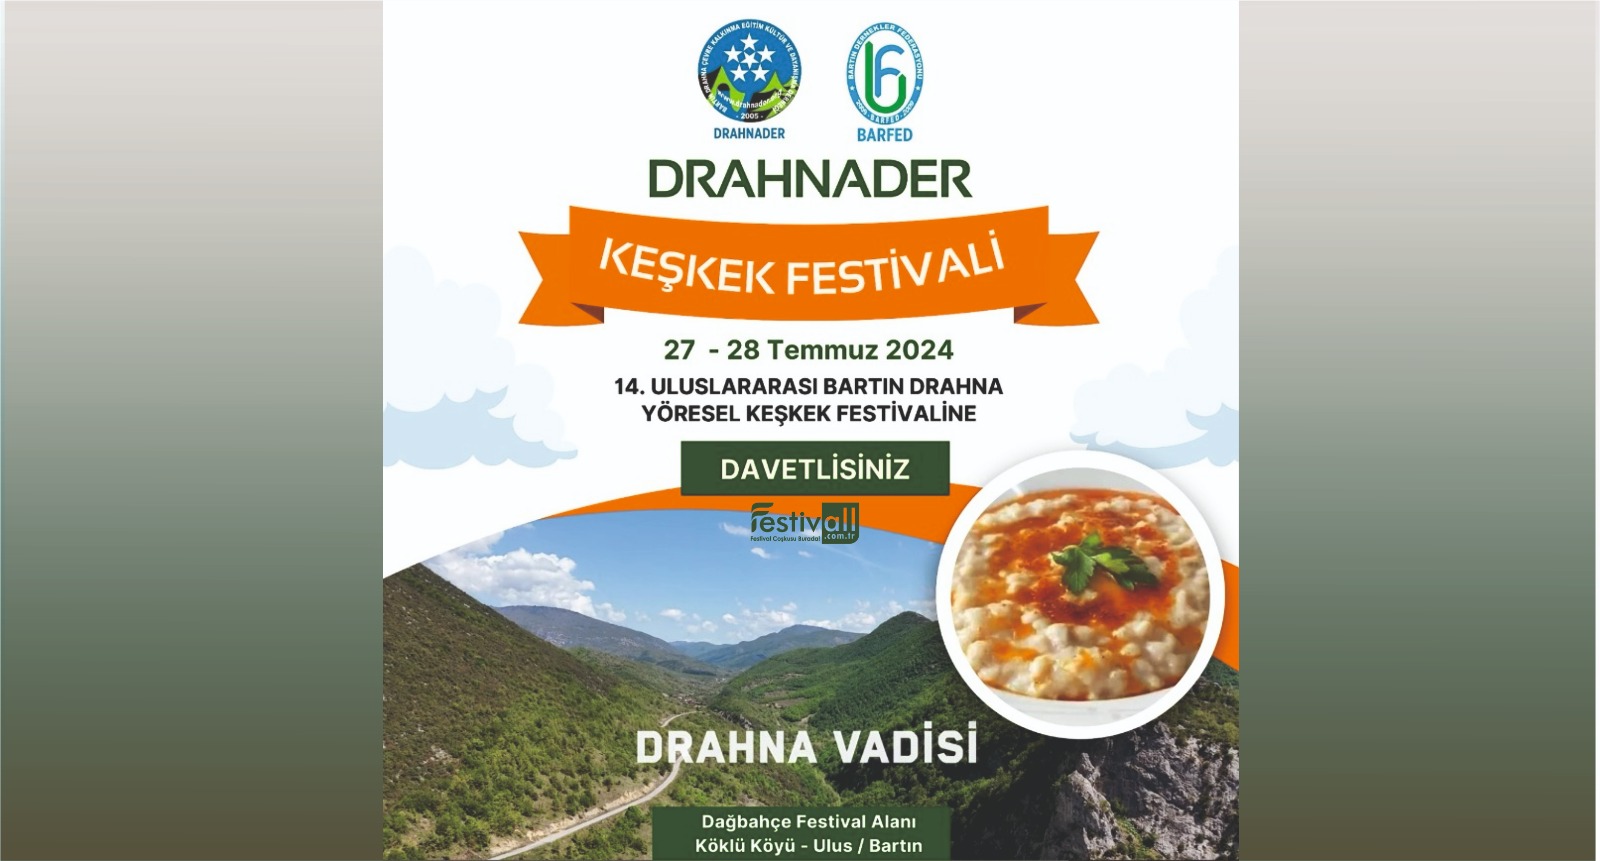 uluslararasi-drahna-yoresel-keskek-festivali-3368